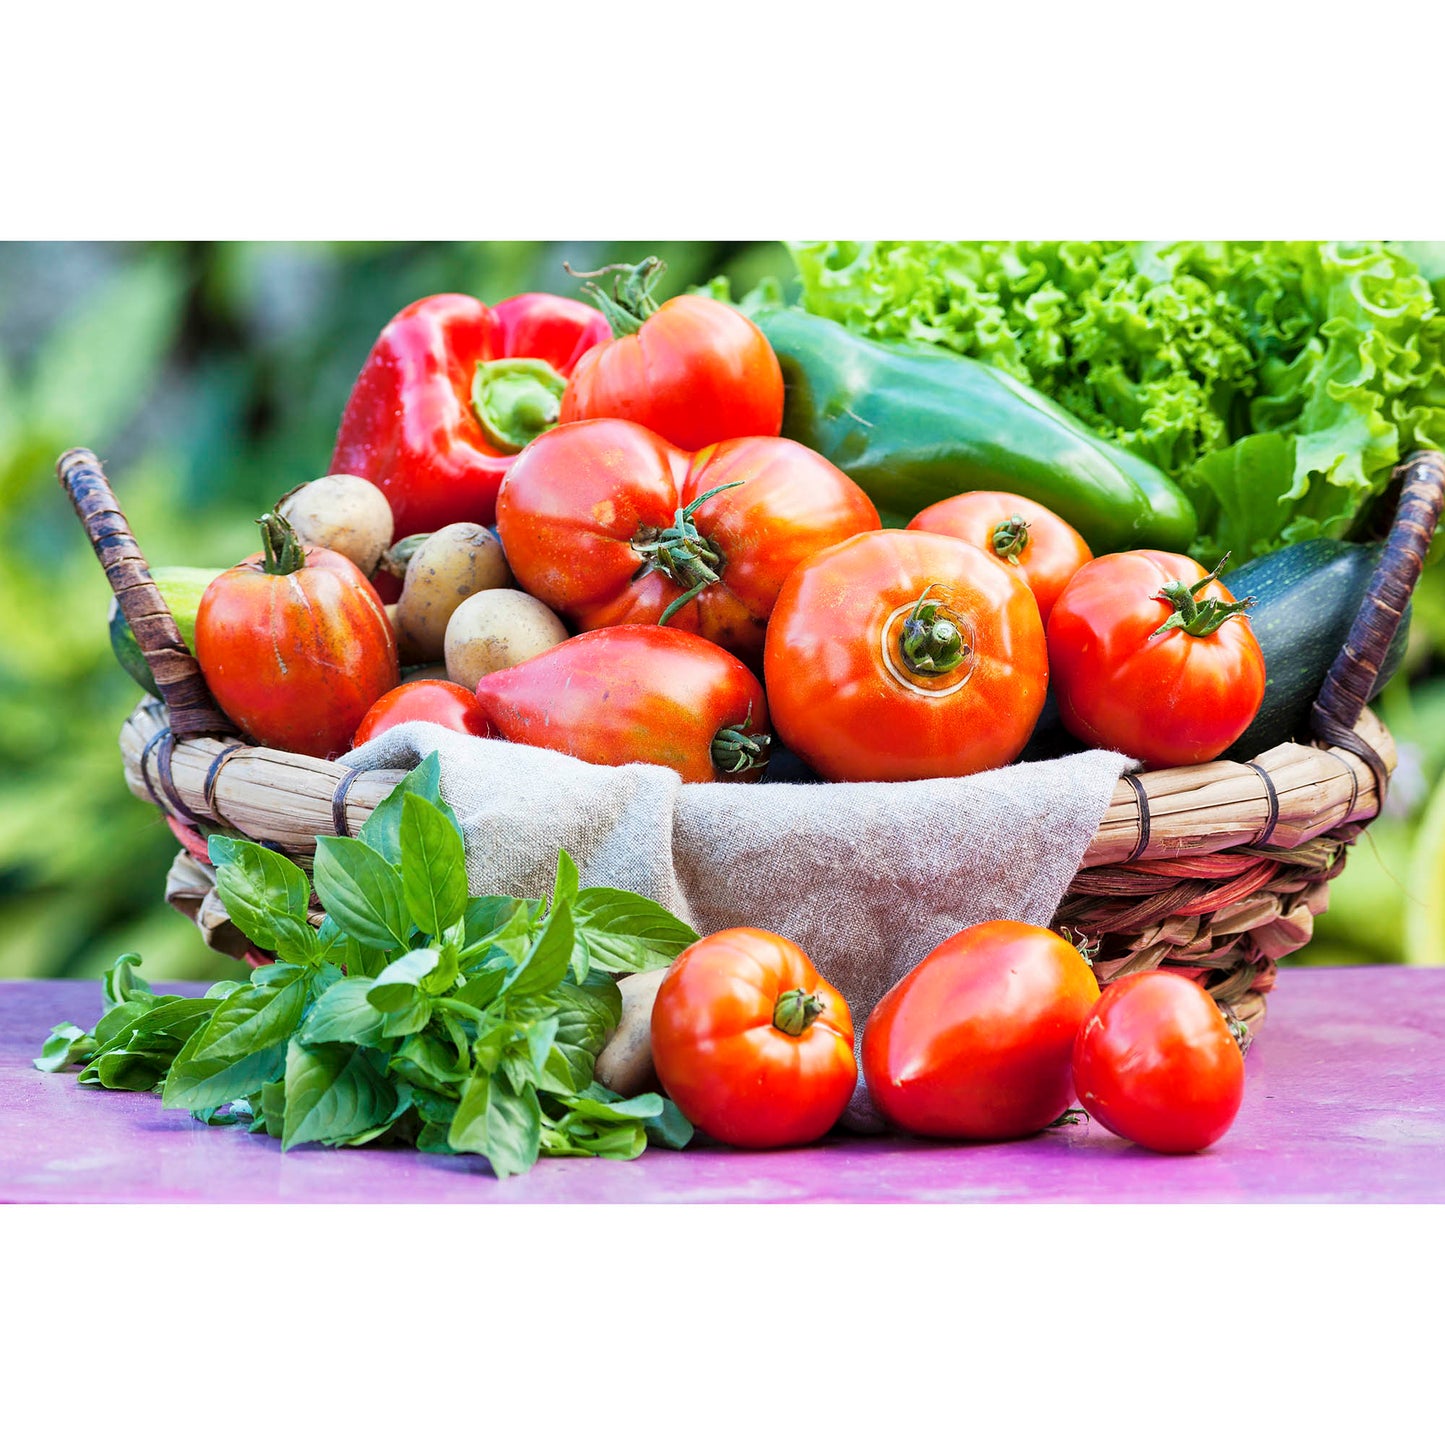 Heirloom Garden Seeds - 101 Varieties Vegetables Fruits Herbs Non-GMO Seeds